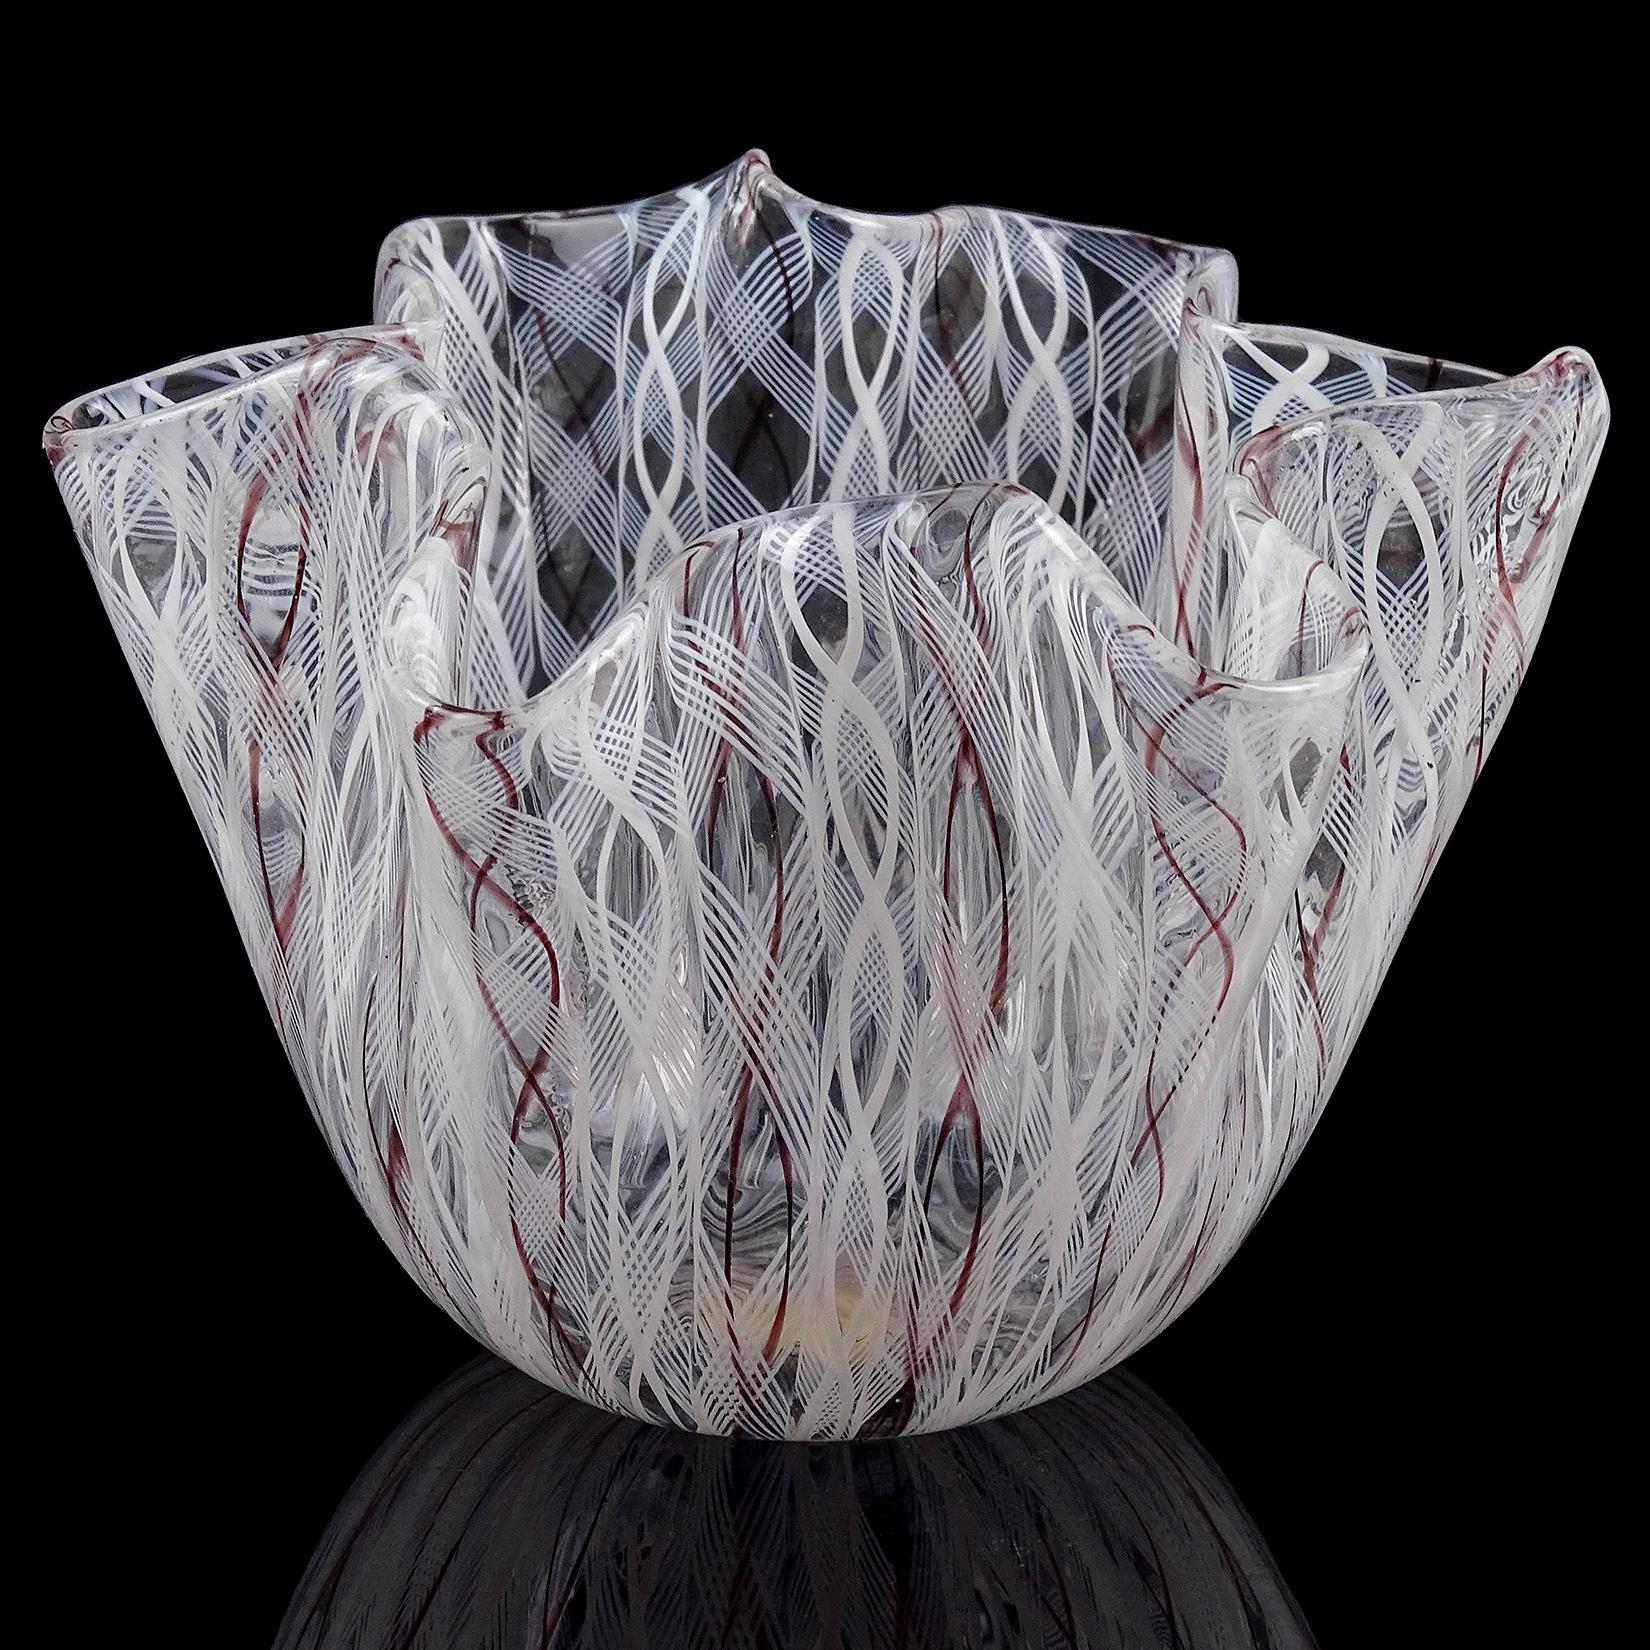 Magnifique vase mouchoir en verre soufflé à la main de Murano, blanc et violet, en verre d'art italien fazzoletto. Documenté au designer Fulvio Bianconi, et signé 